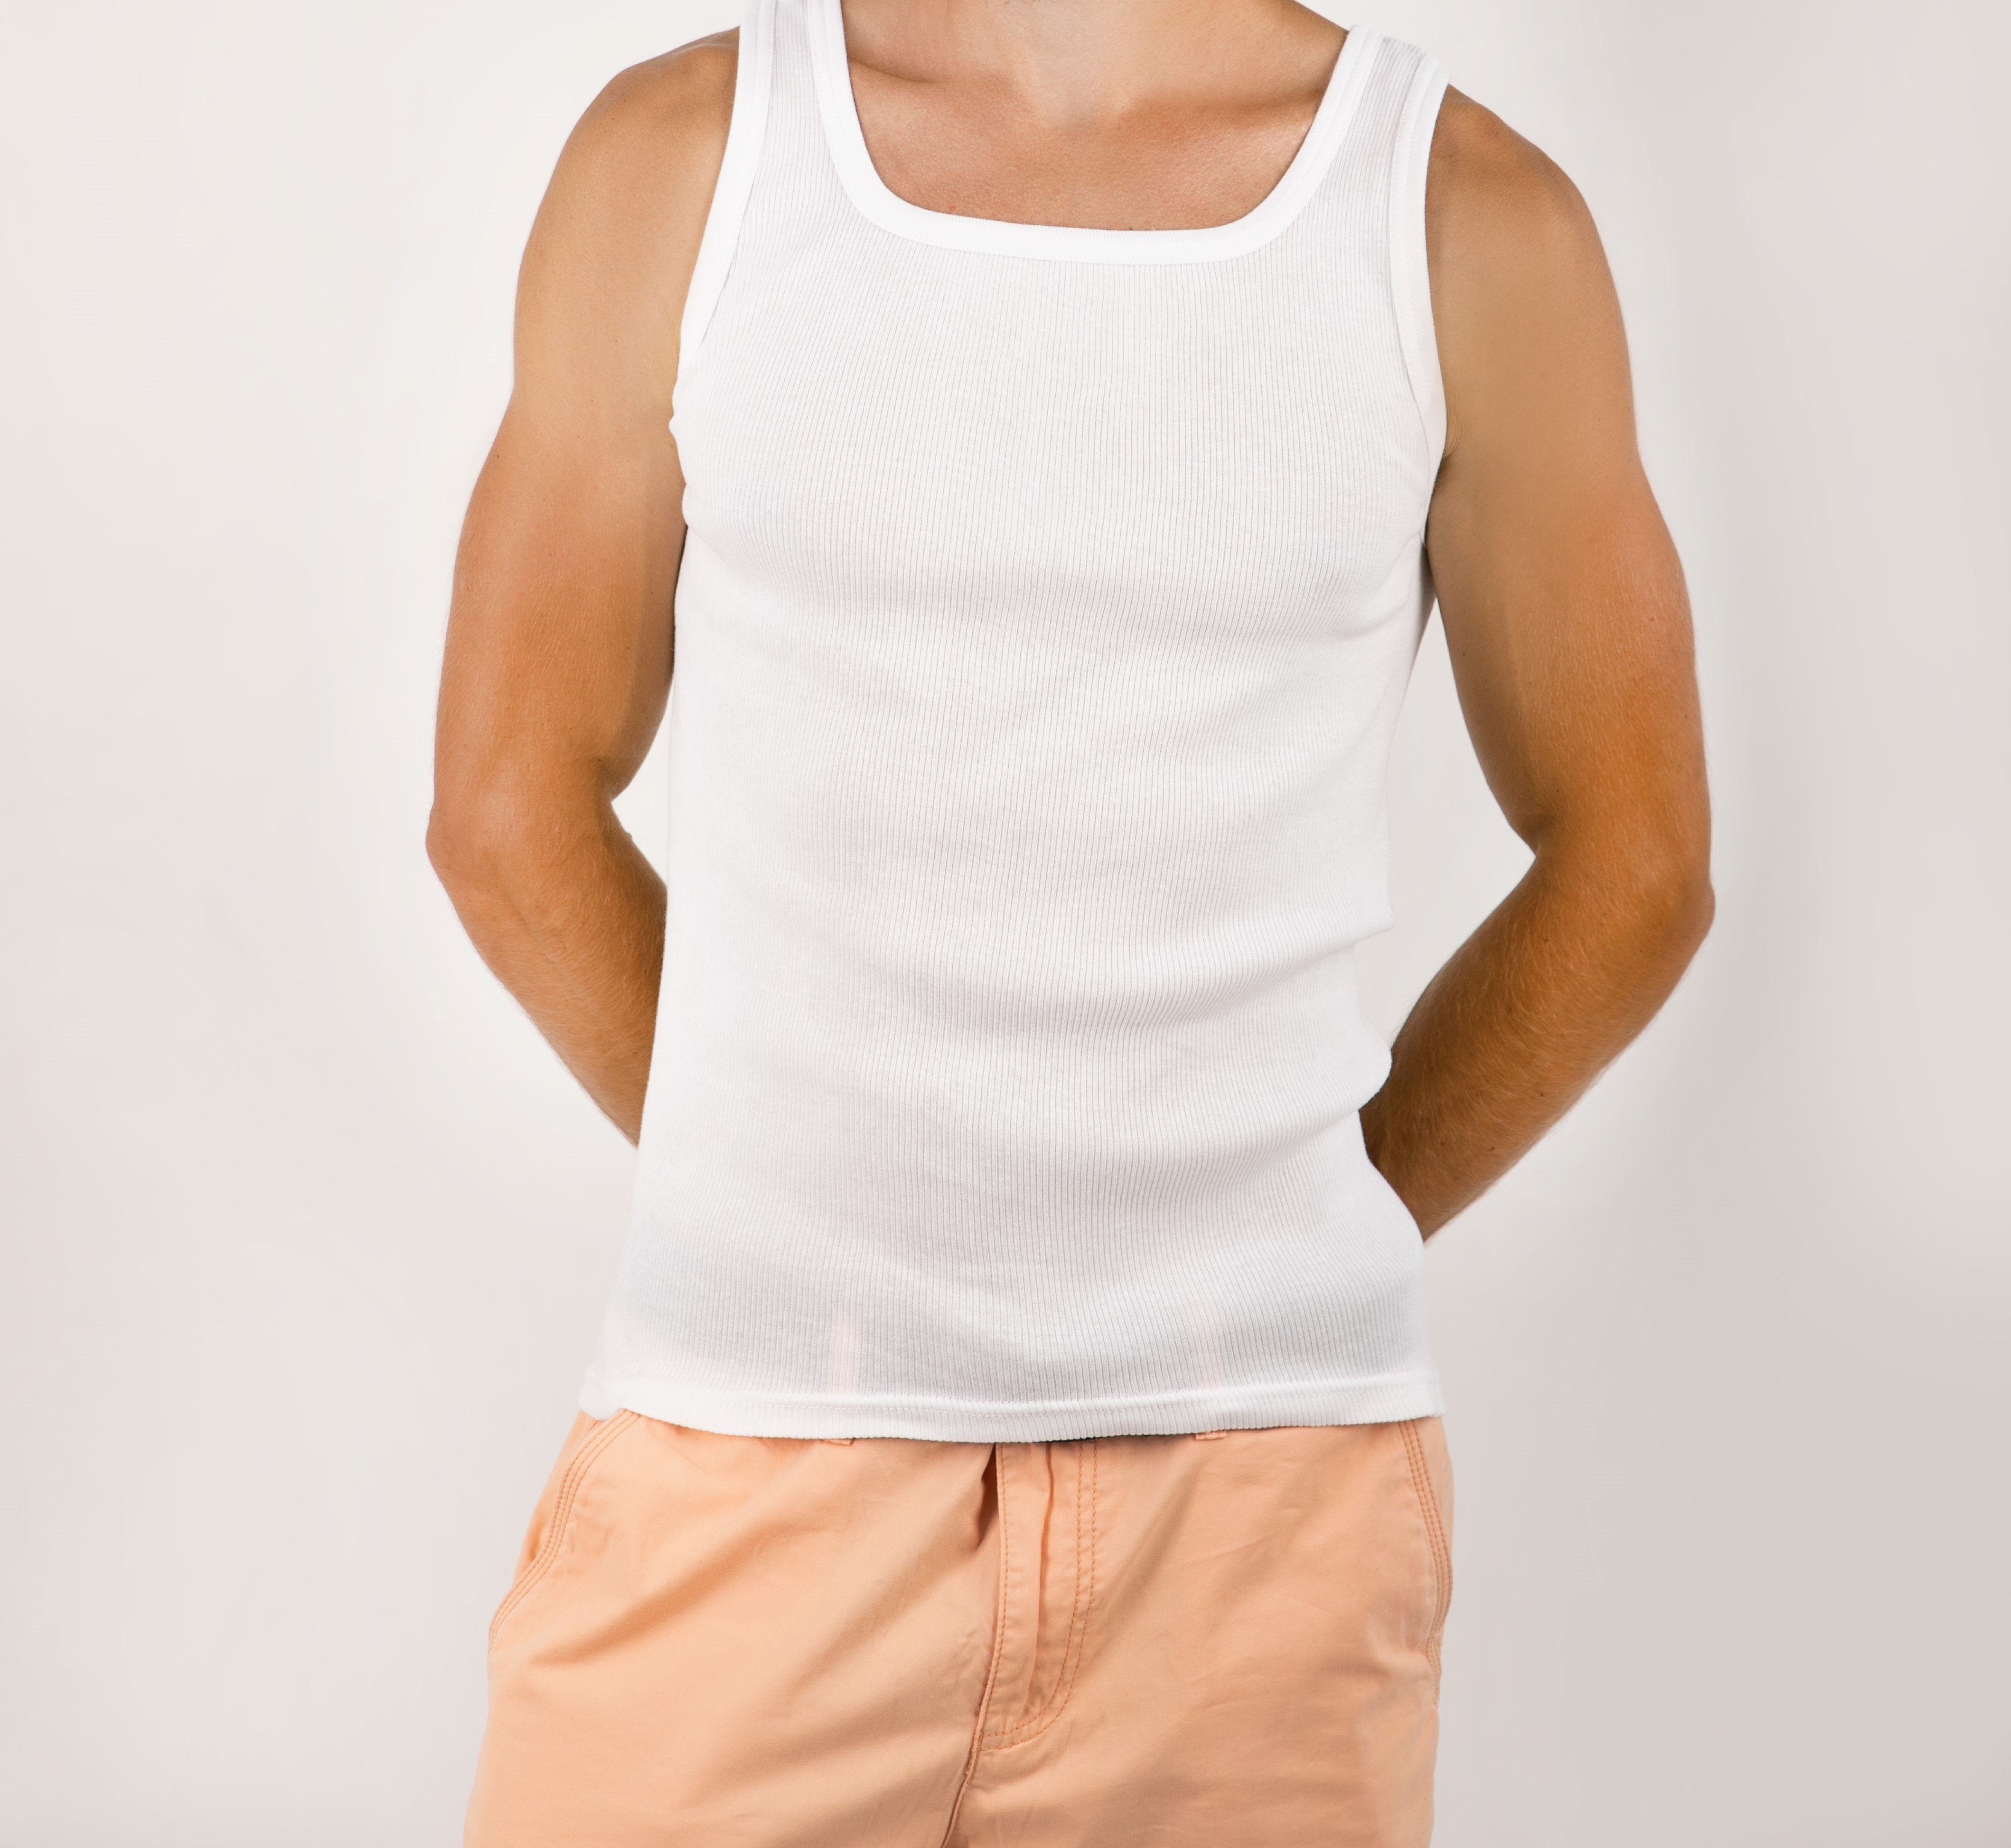 Weiß Pack 3-er Unterhemd 100% Herrenunterhemden Top-Qualität STTS Feinripp Baumwolle